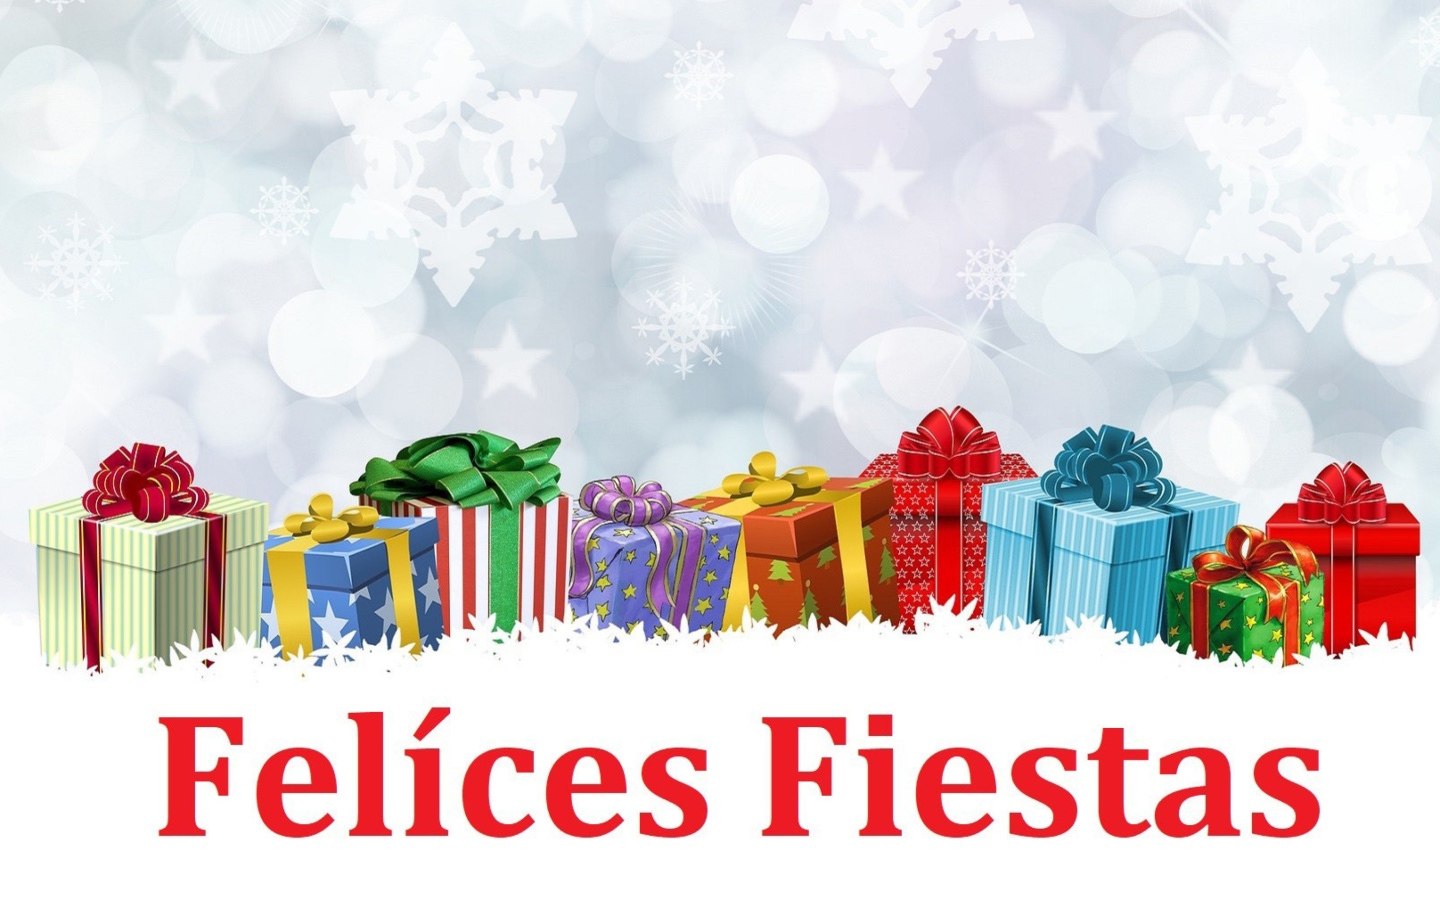 Felices Fiestas wallpaper 1440x900